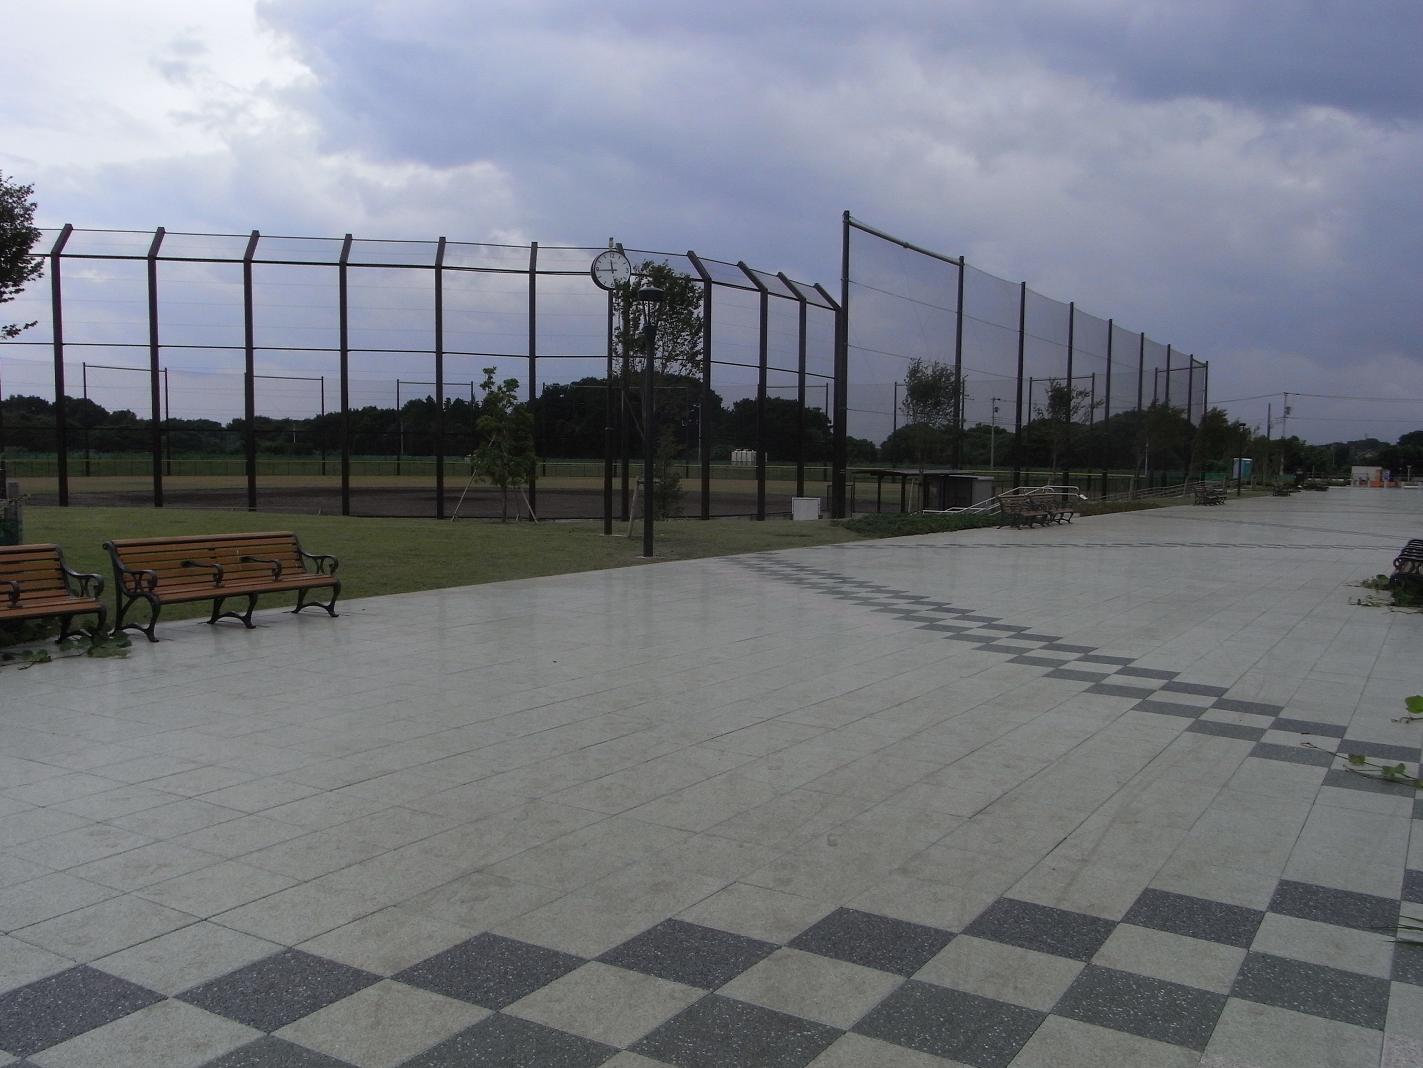 石畳の広い通路の奥に見える防球ネットで囲まれた第2野球場の写真